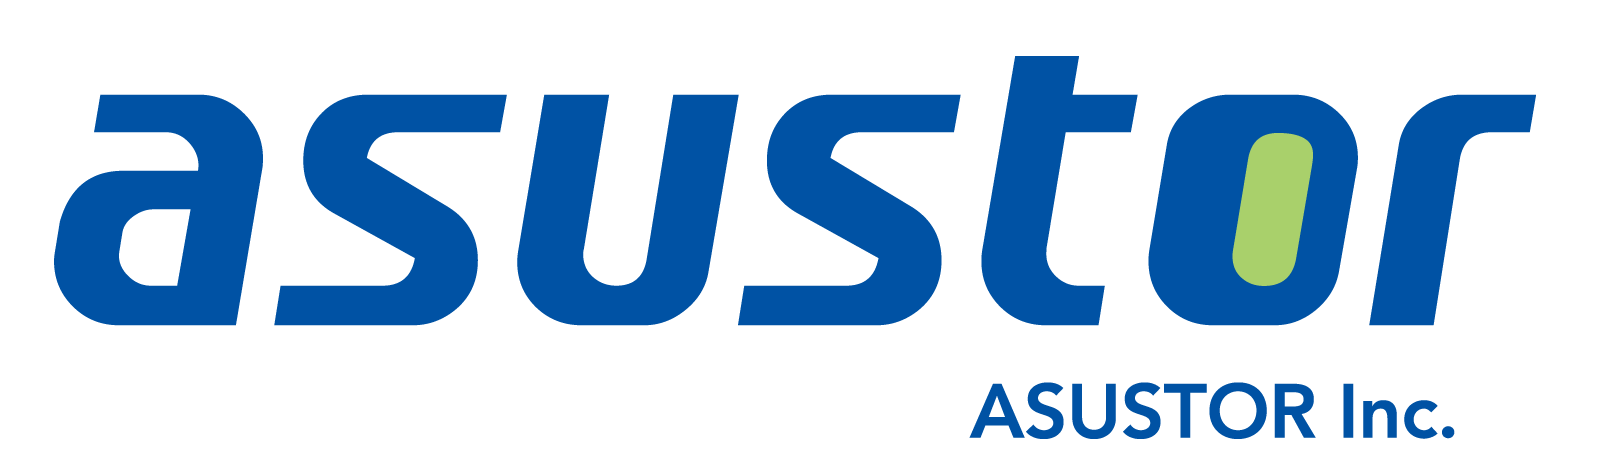 Логотип производителя ASUSTOR